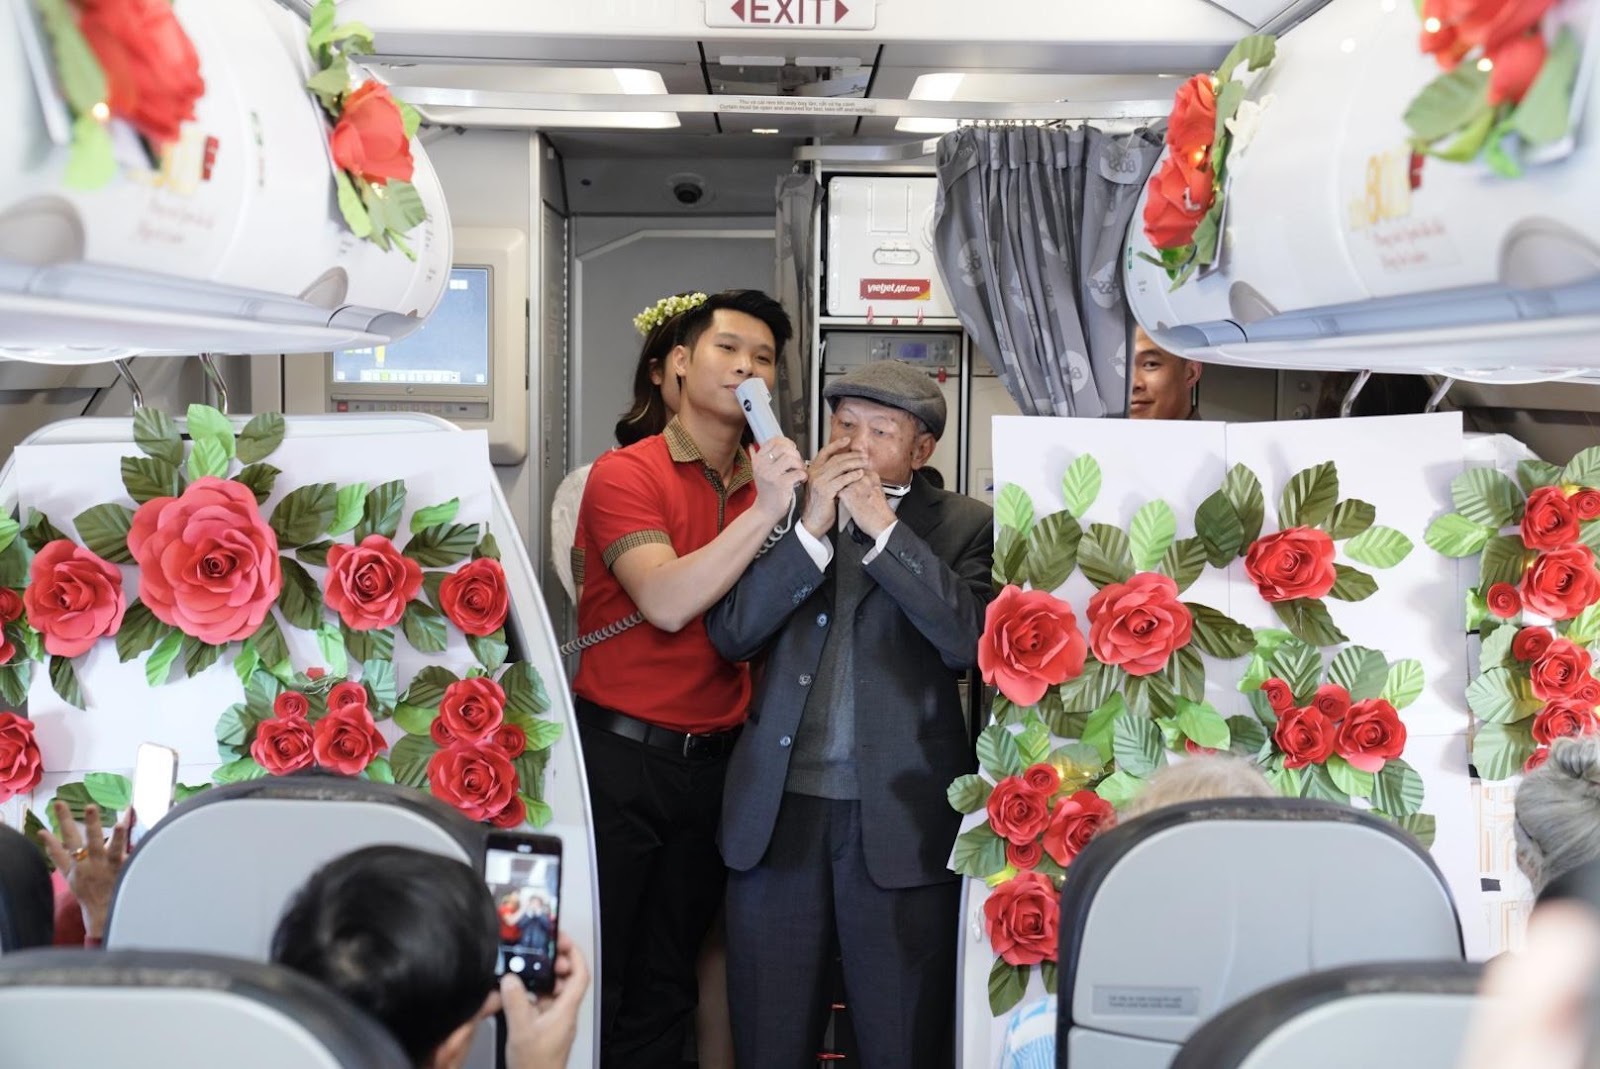 Cụ ông U90 tỏ tình ngọt ngào với vợ trên chuyến bay Vietjet ngày Valentine- Ảnh 1.